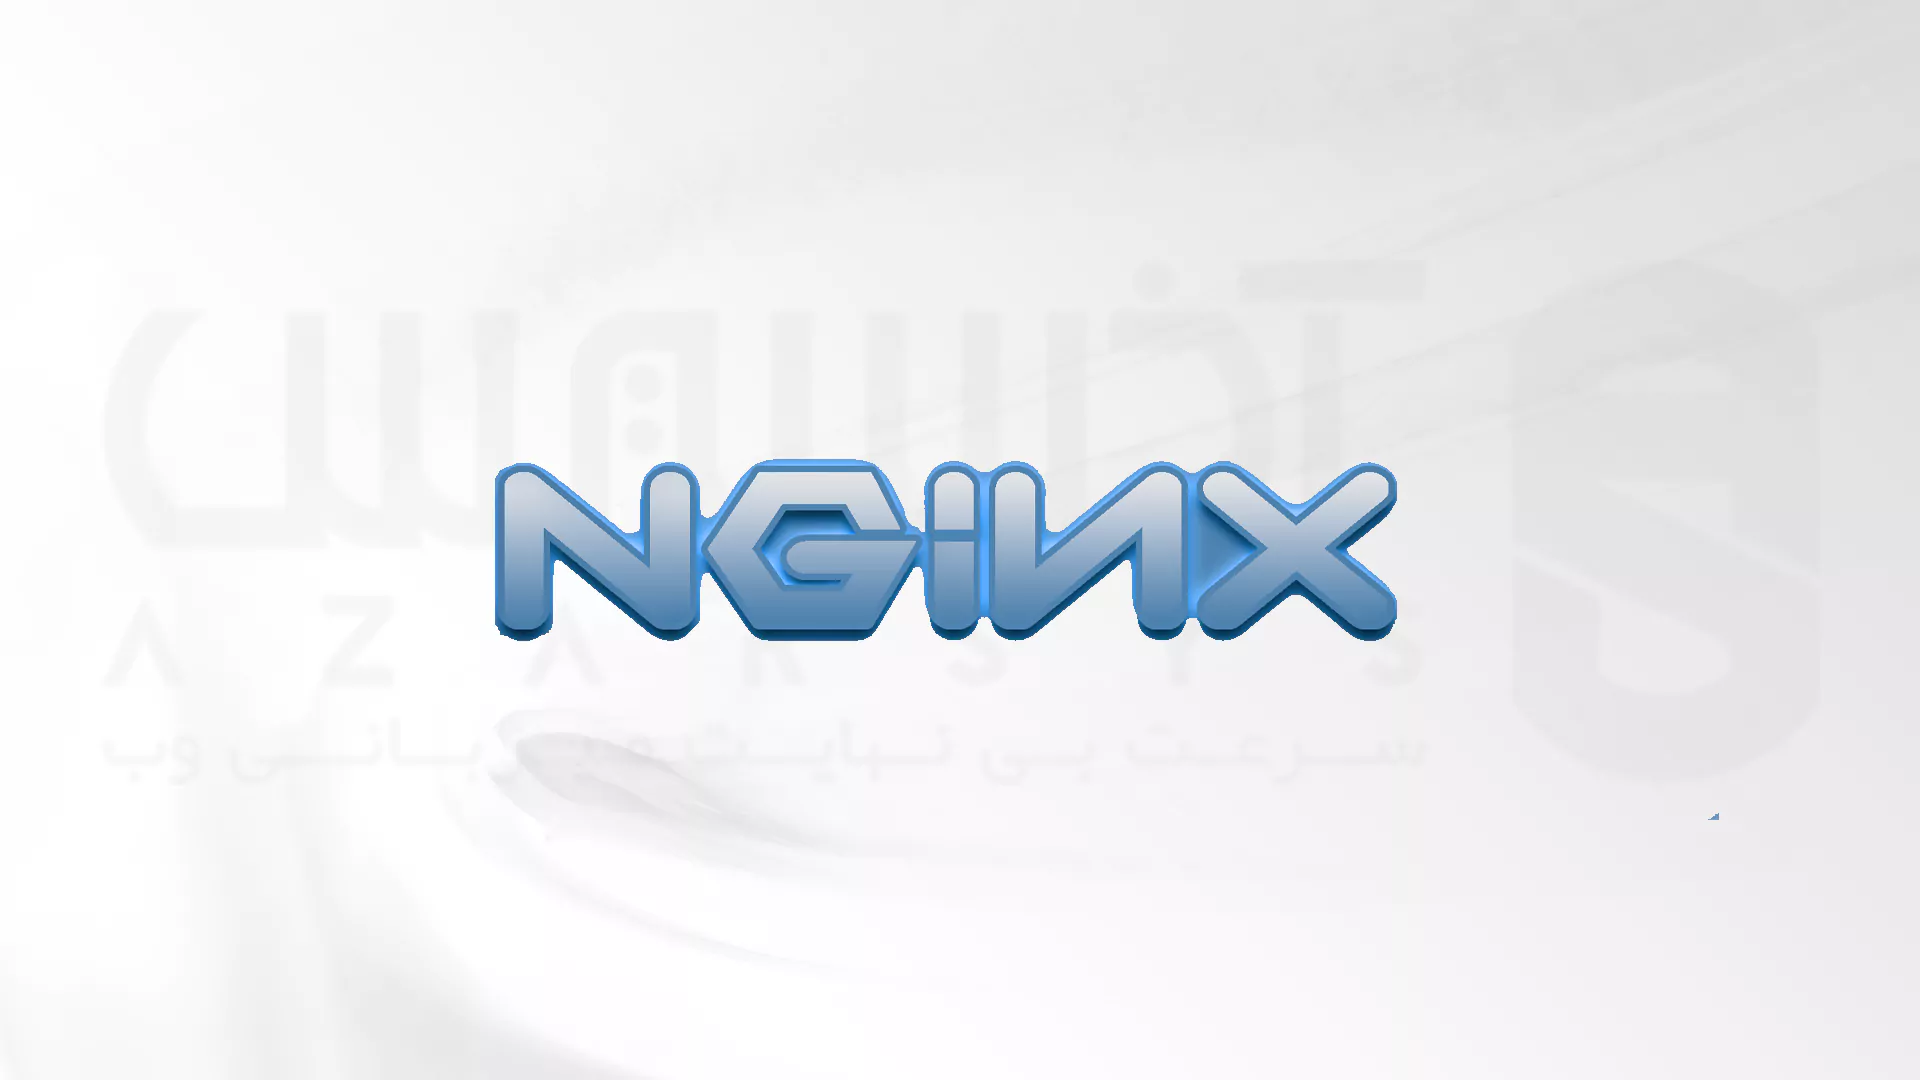 نحوه نصب Nginx در اوبونتو 20.04